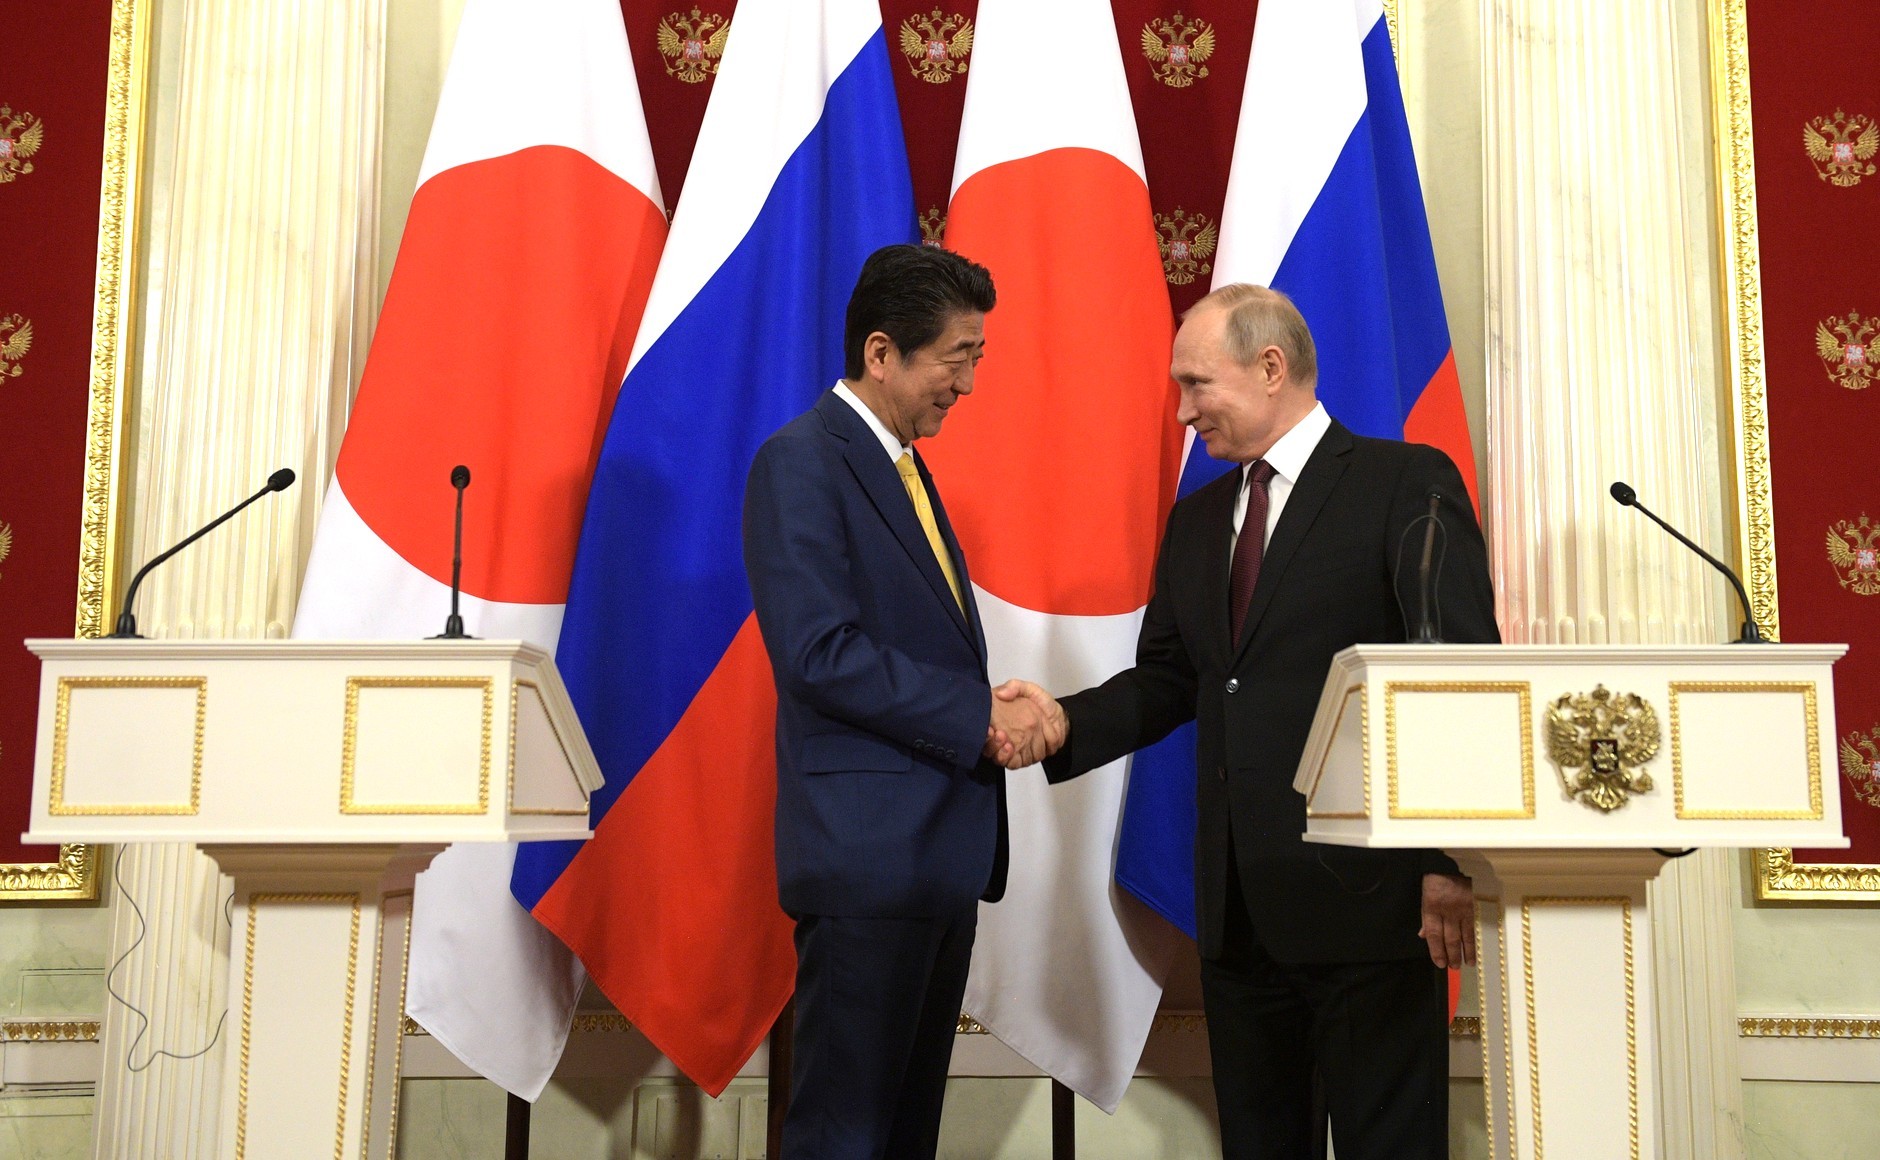 Премьер-министр Японии Синдзо Абэ и президент России Владимир Путин. Фото © Официальный сайт президента России
